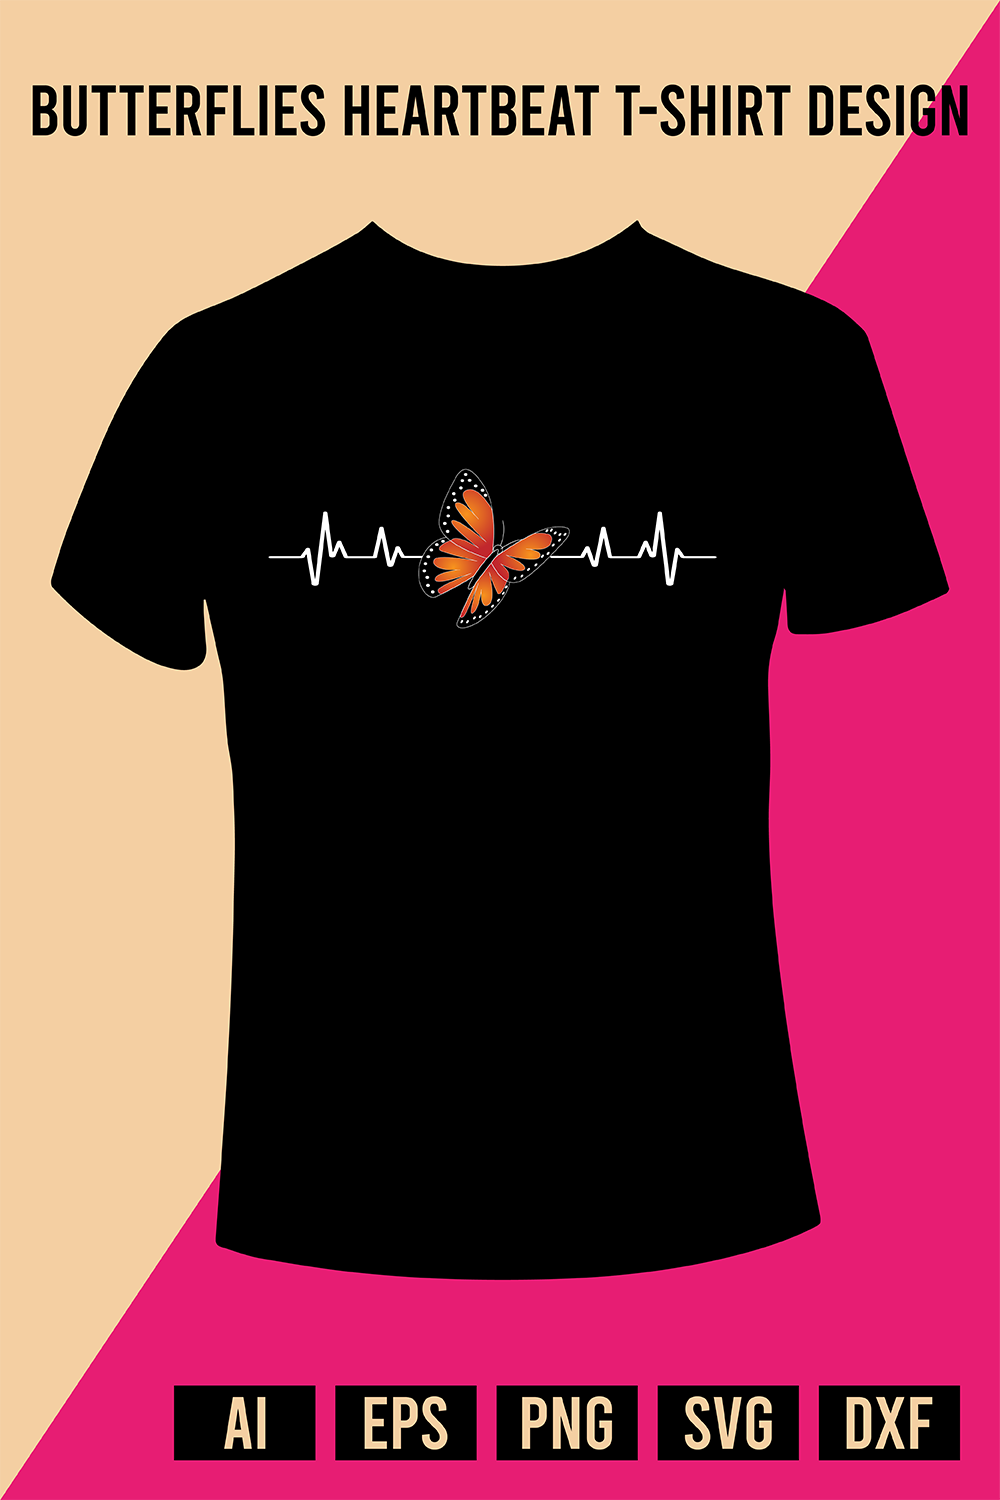 Butterflies Heartbeat T-Shirt Design pinterest preview image.